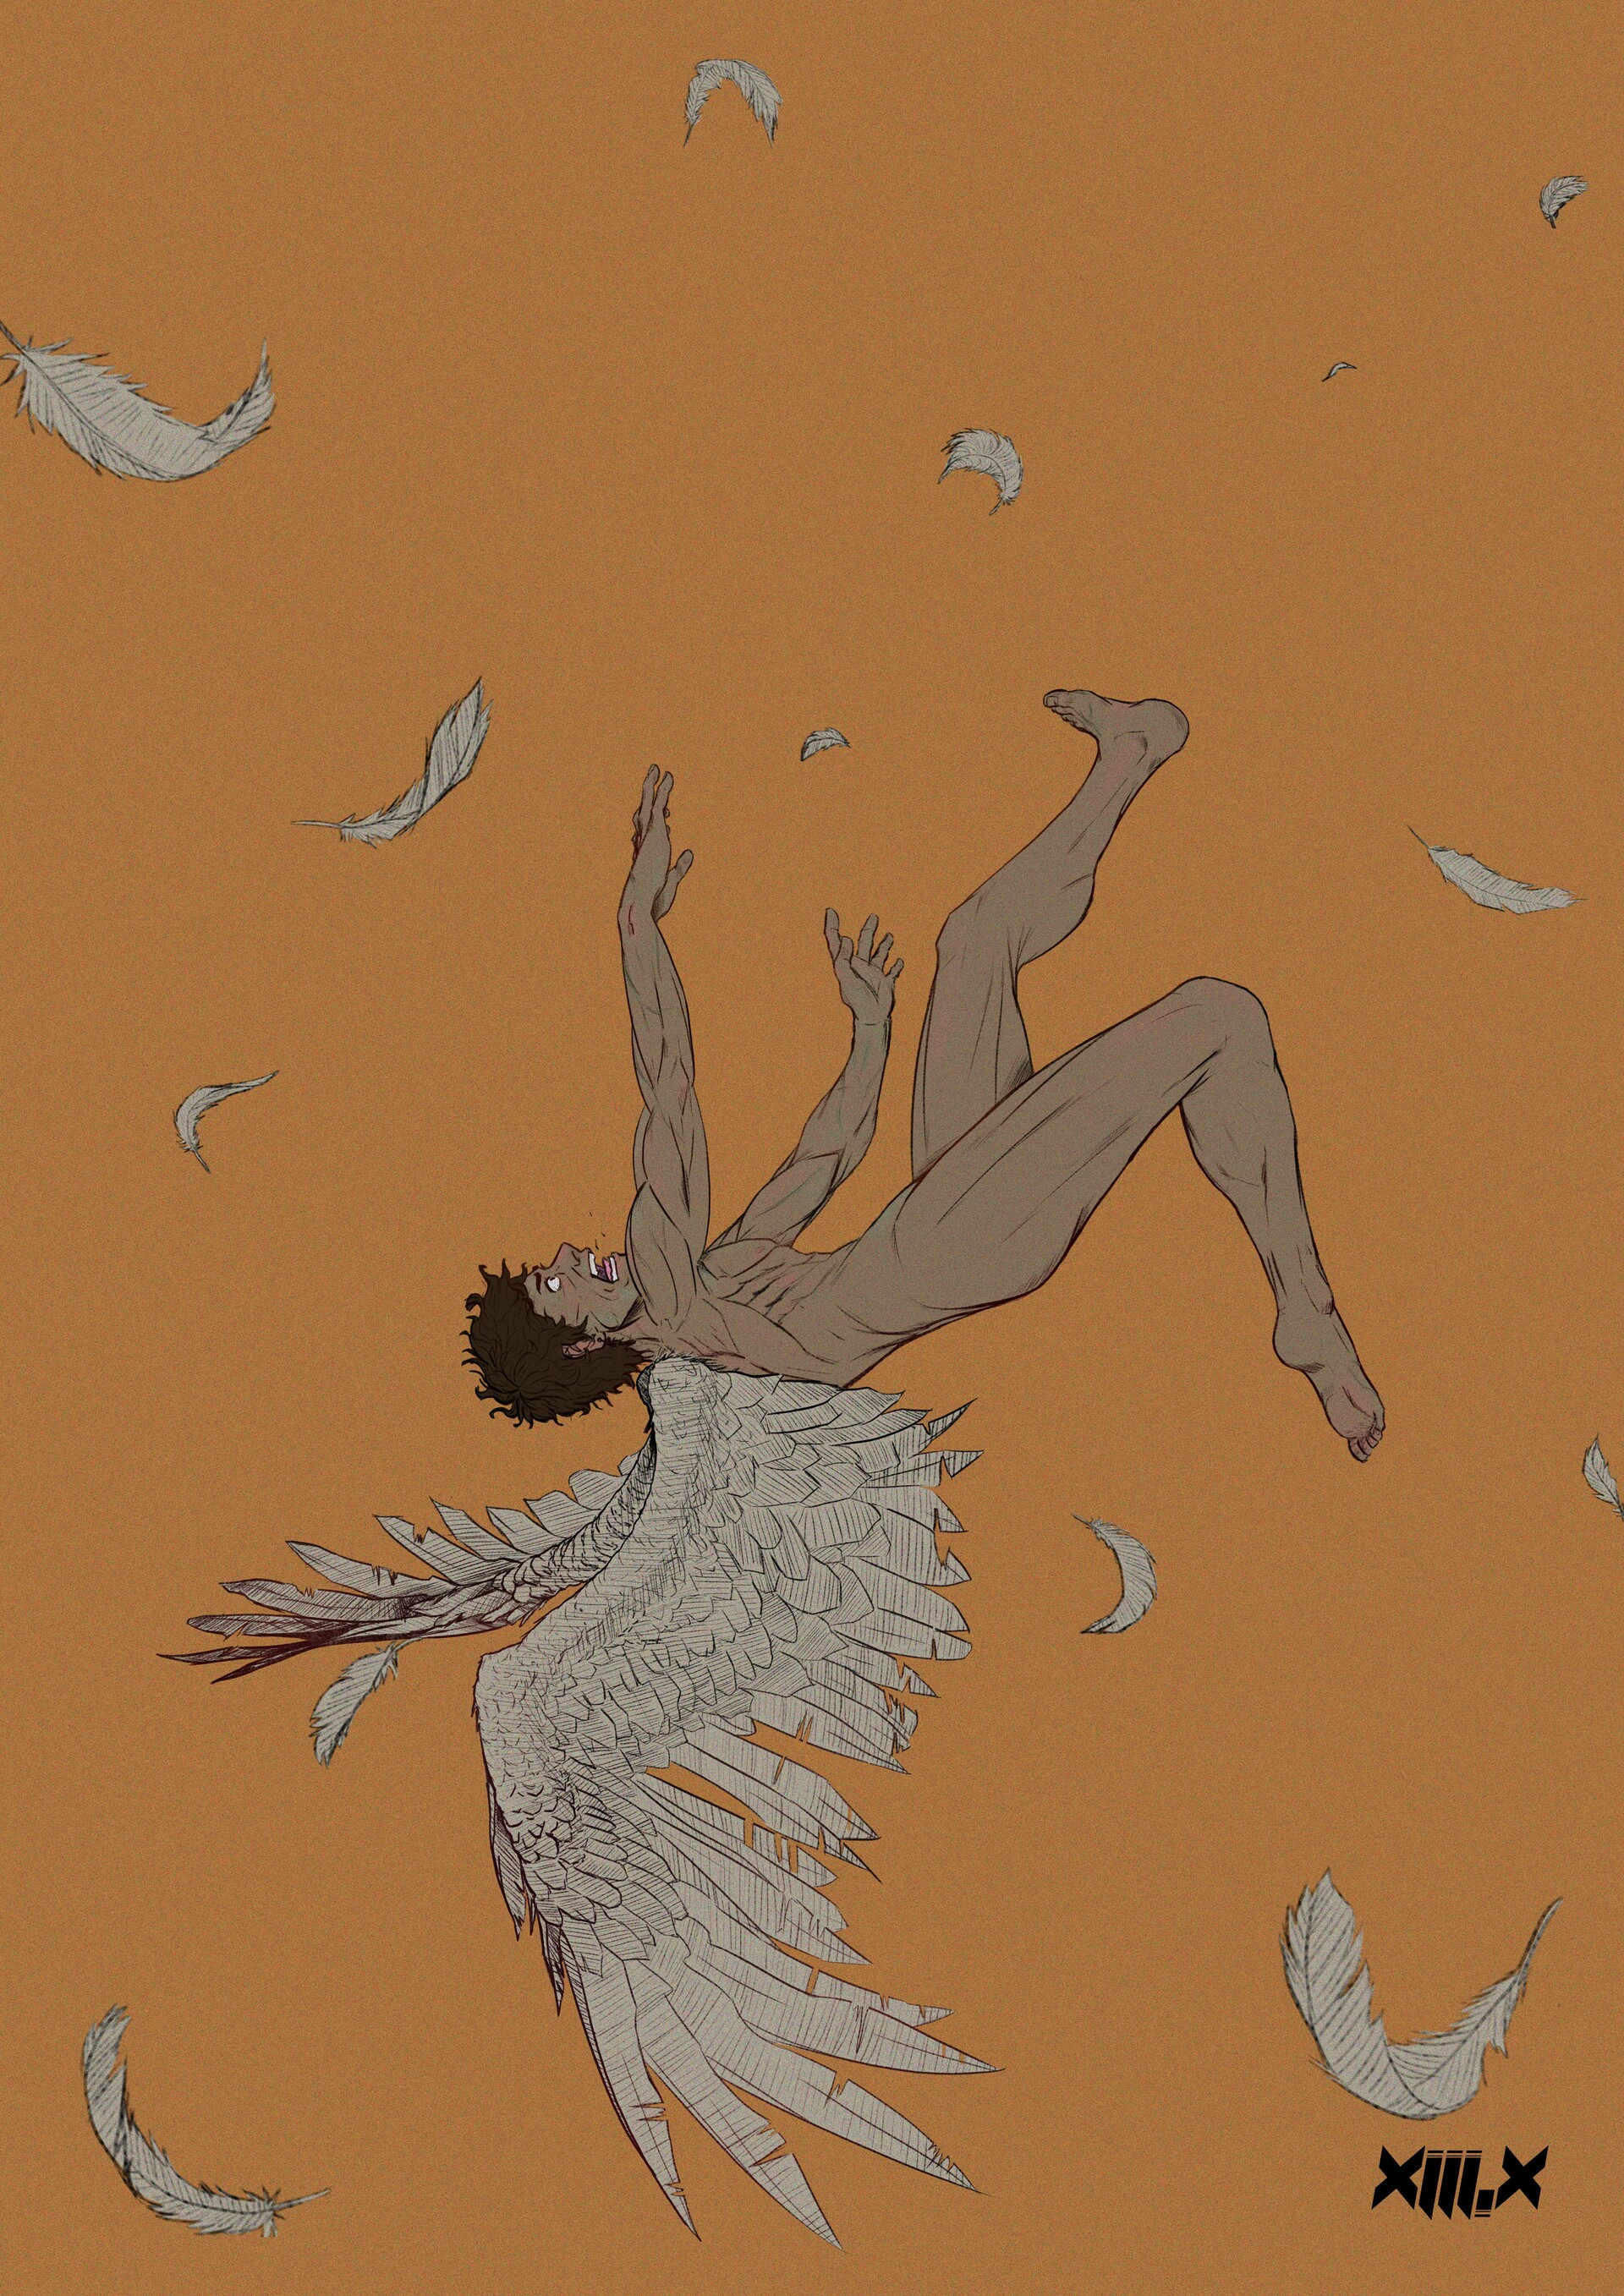 Meekaeel Jordan - The Fall of Icarus